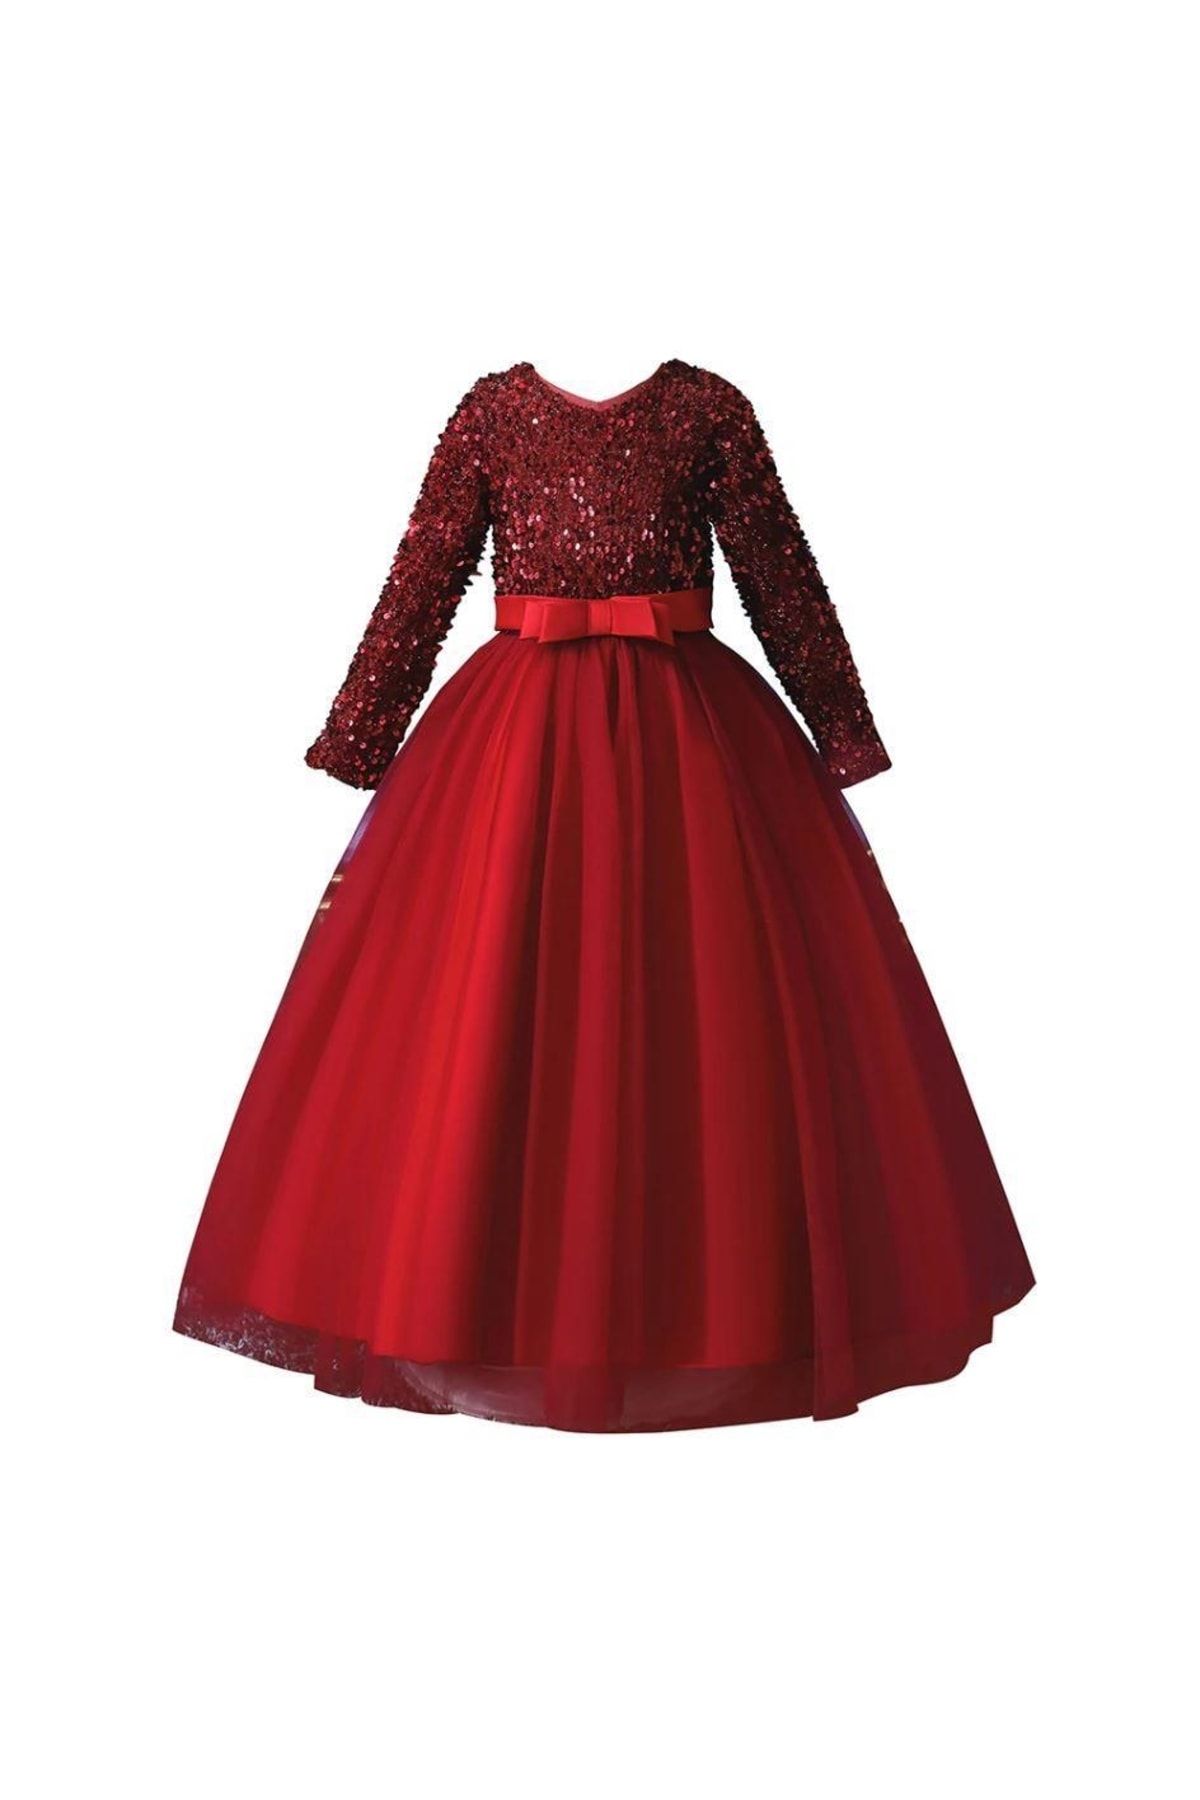 Mashotrend Kırmızı Tarlatanlı Zara Payetli Çocuk Abiye - Kız Çocuk Elbise - Kız Çocuk Balo Elbise -